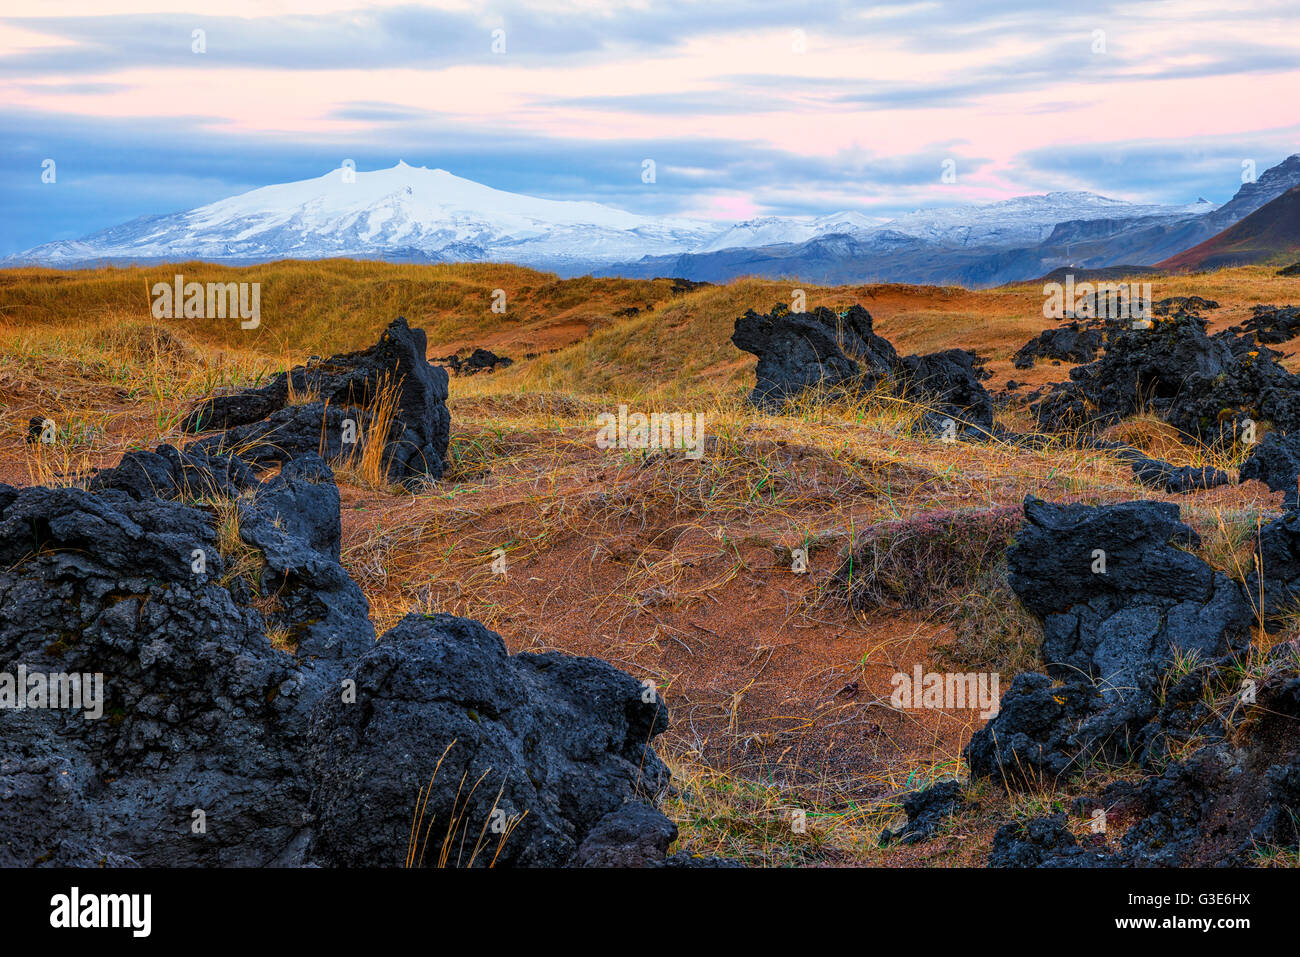 Snaefellsjokull si innalza al di sopra del paesaggio circostante in Islanda della penisola Snaefellsness, con il sorgere del sole che illumina il cielo; Islanda Foto Stock